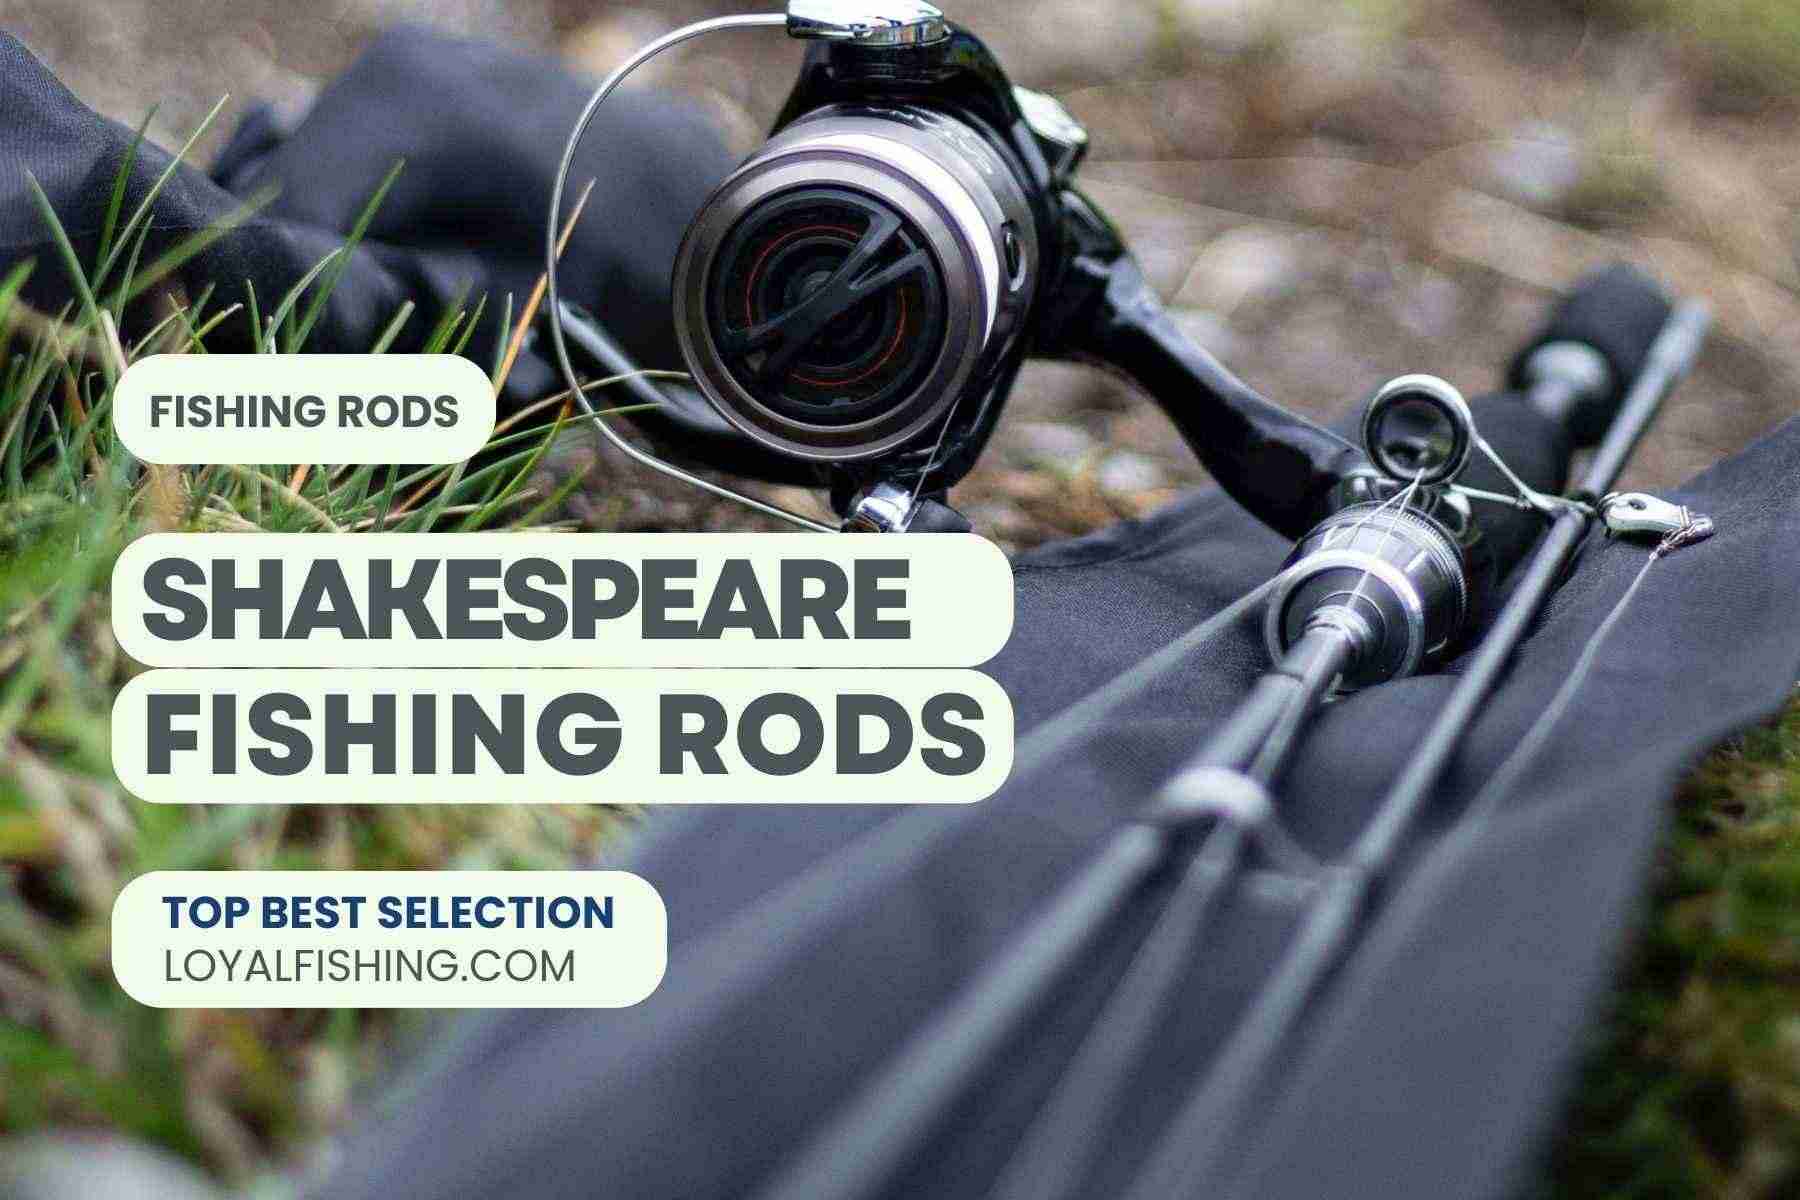 Shakespeare Fishing Rods